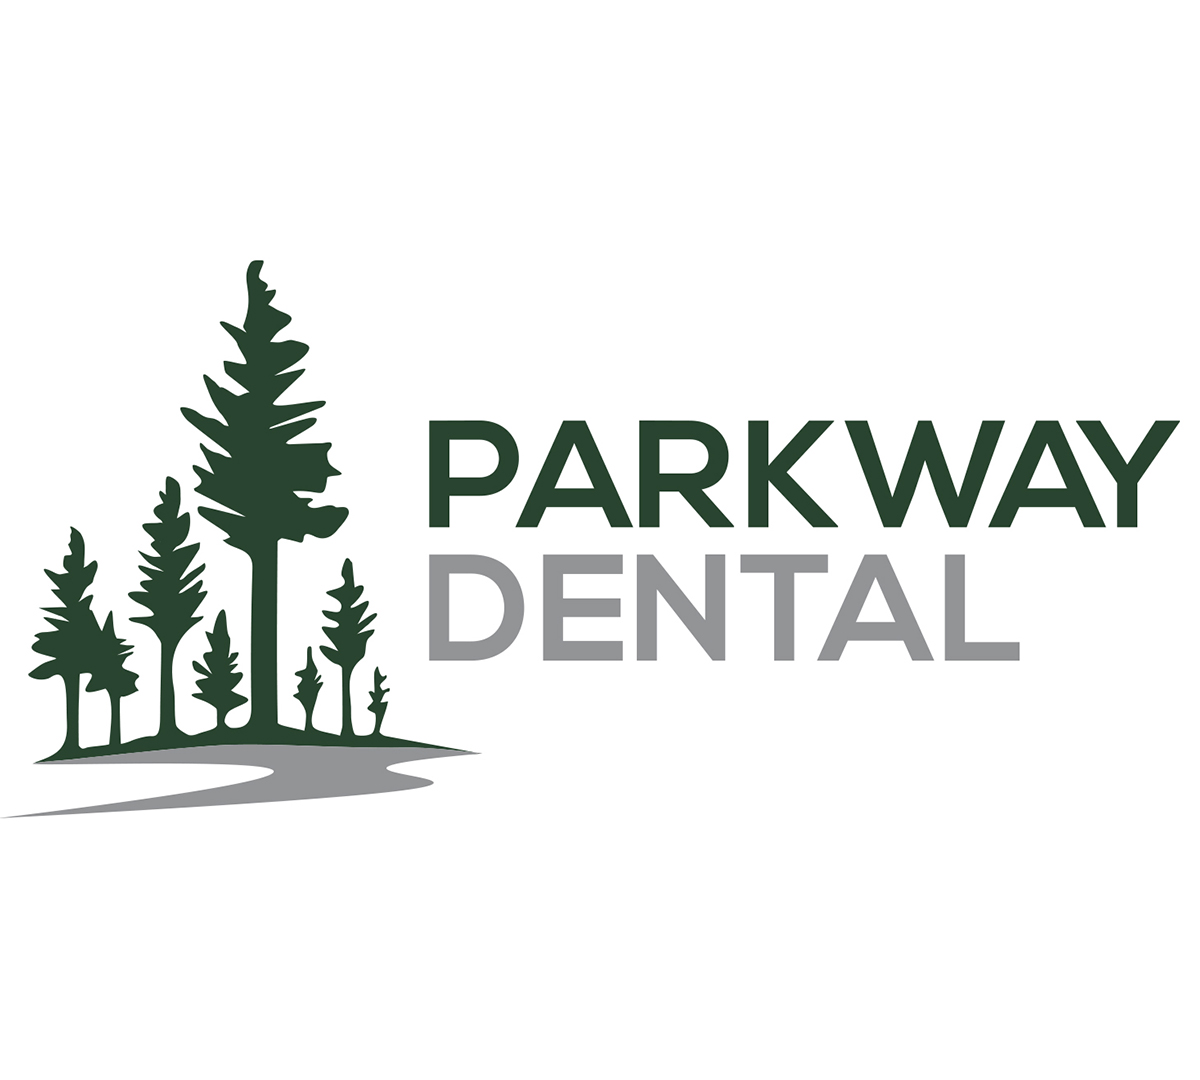 Parkway Dental